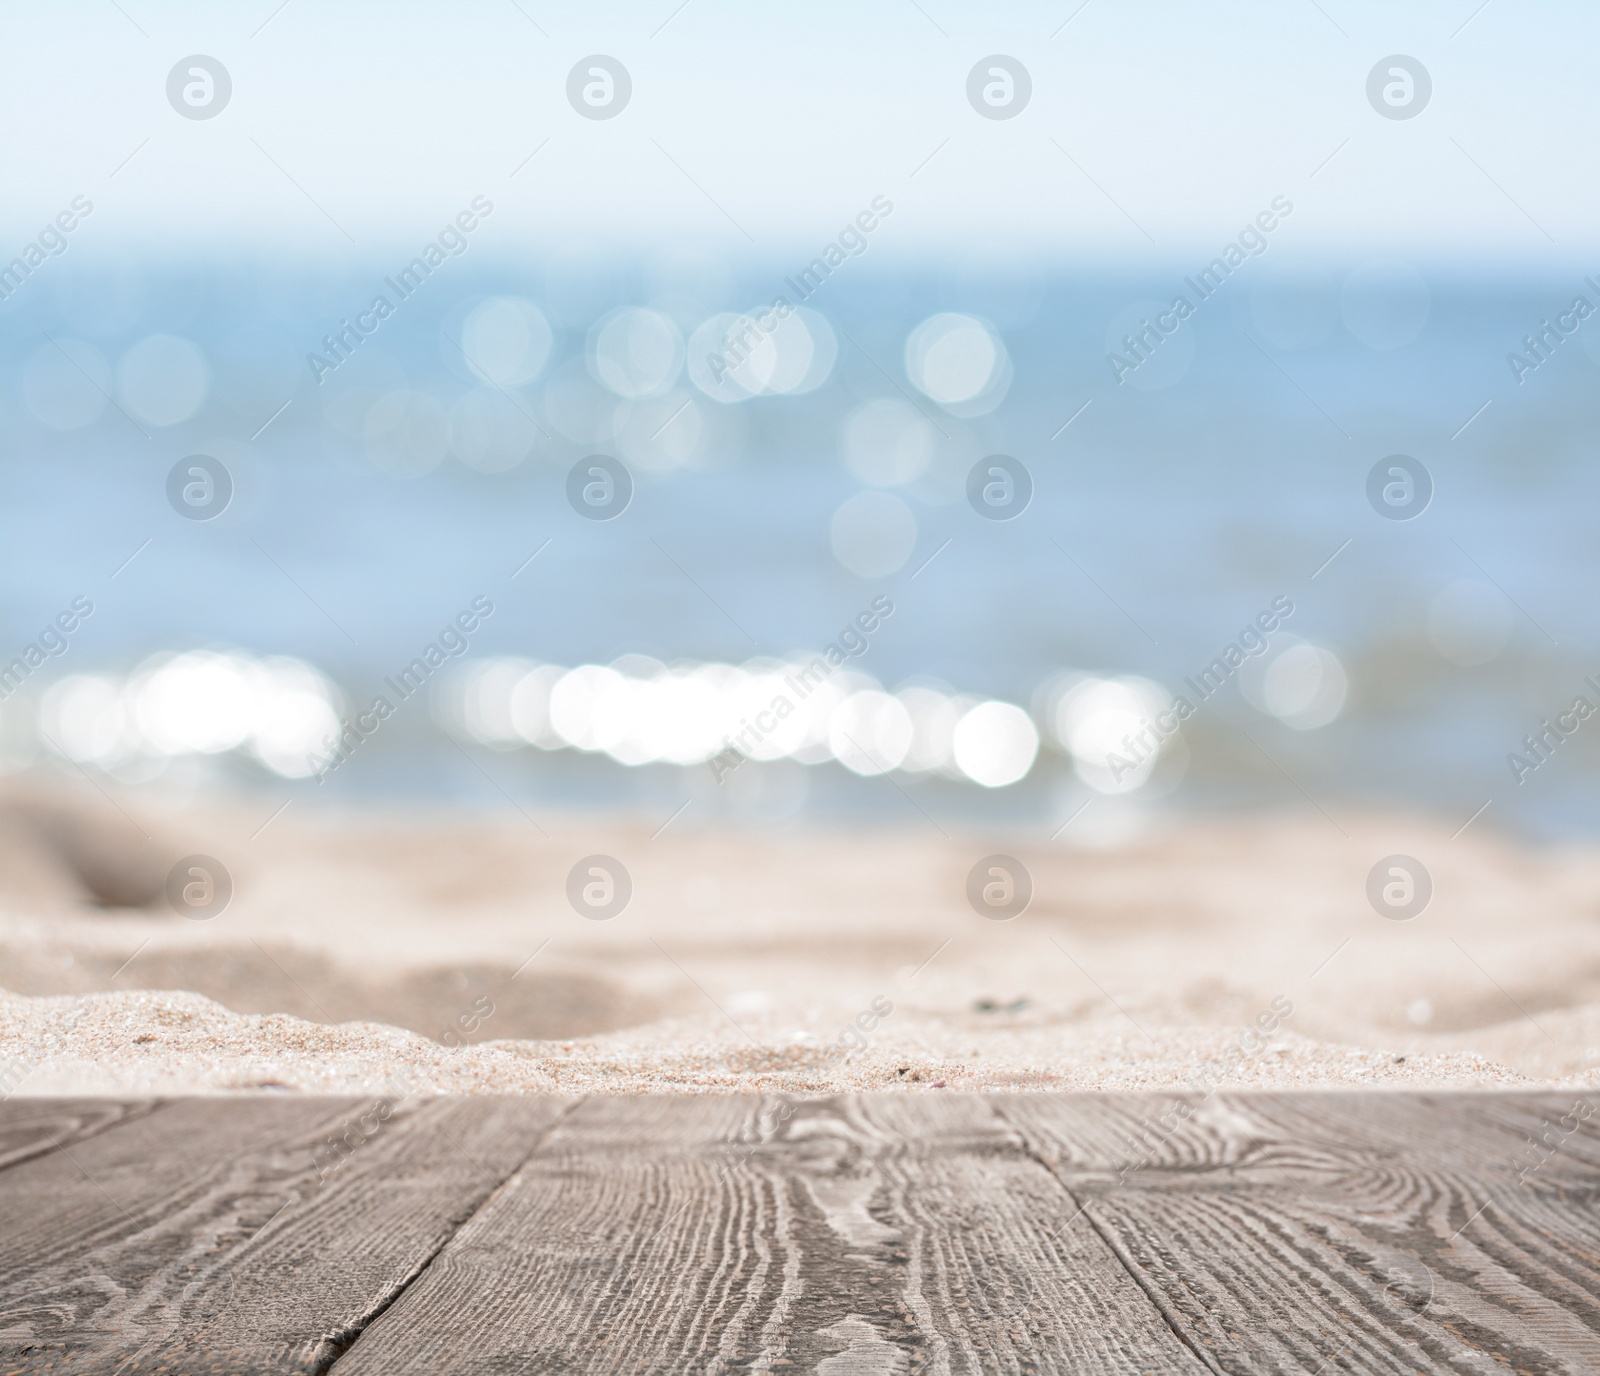 Image of Empty wooden surface on beach near sea. Summer season